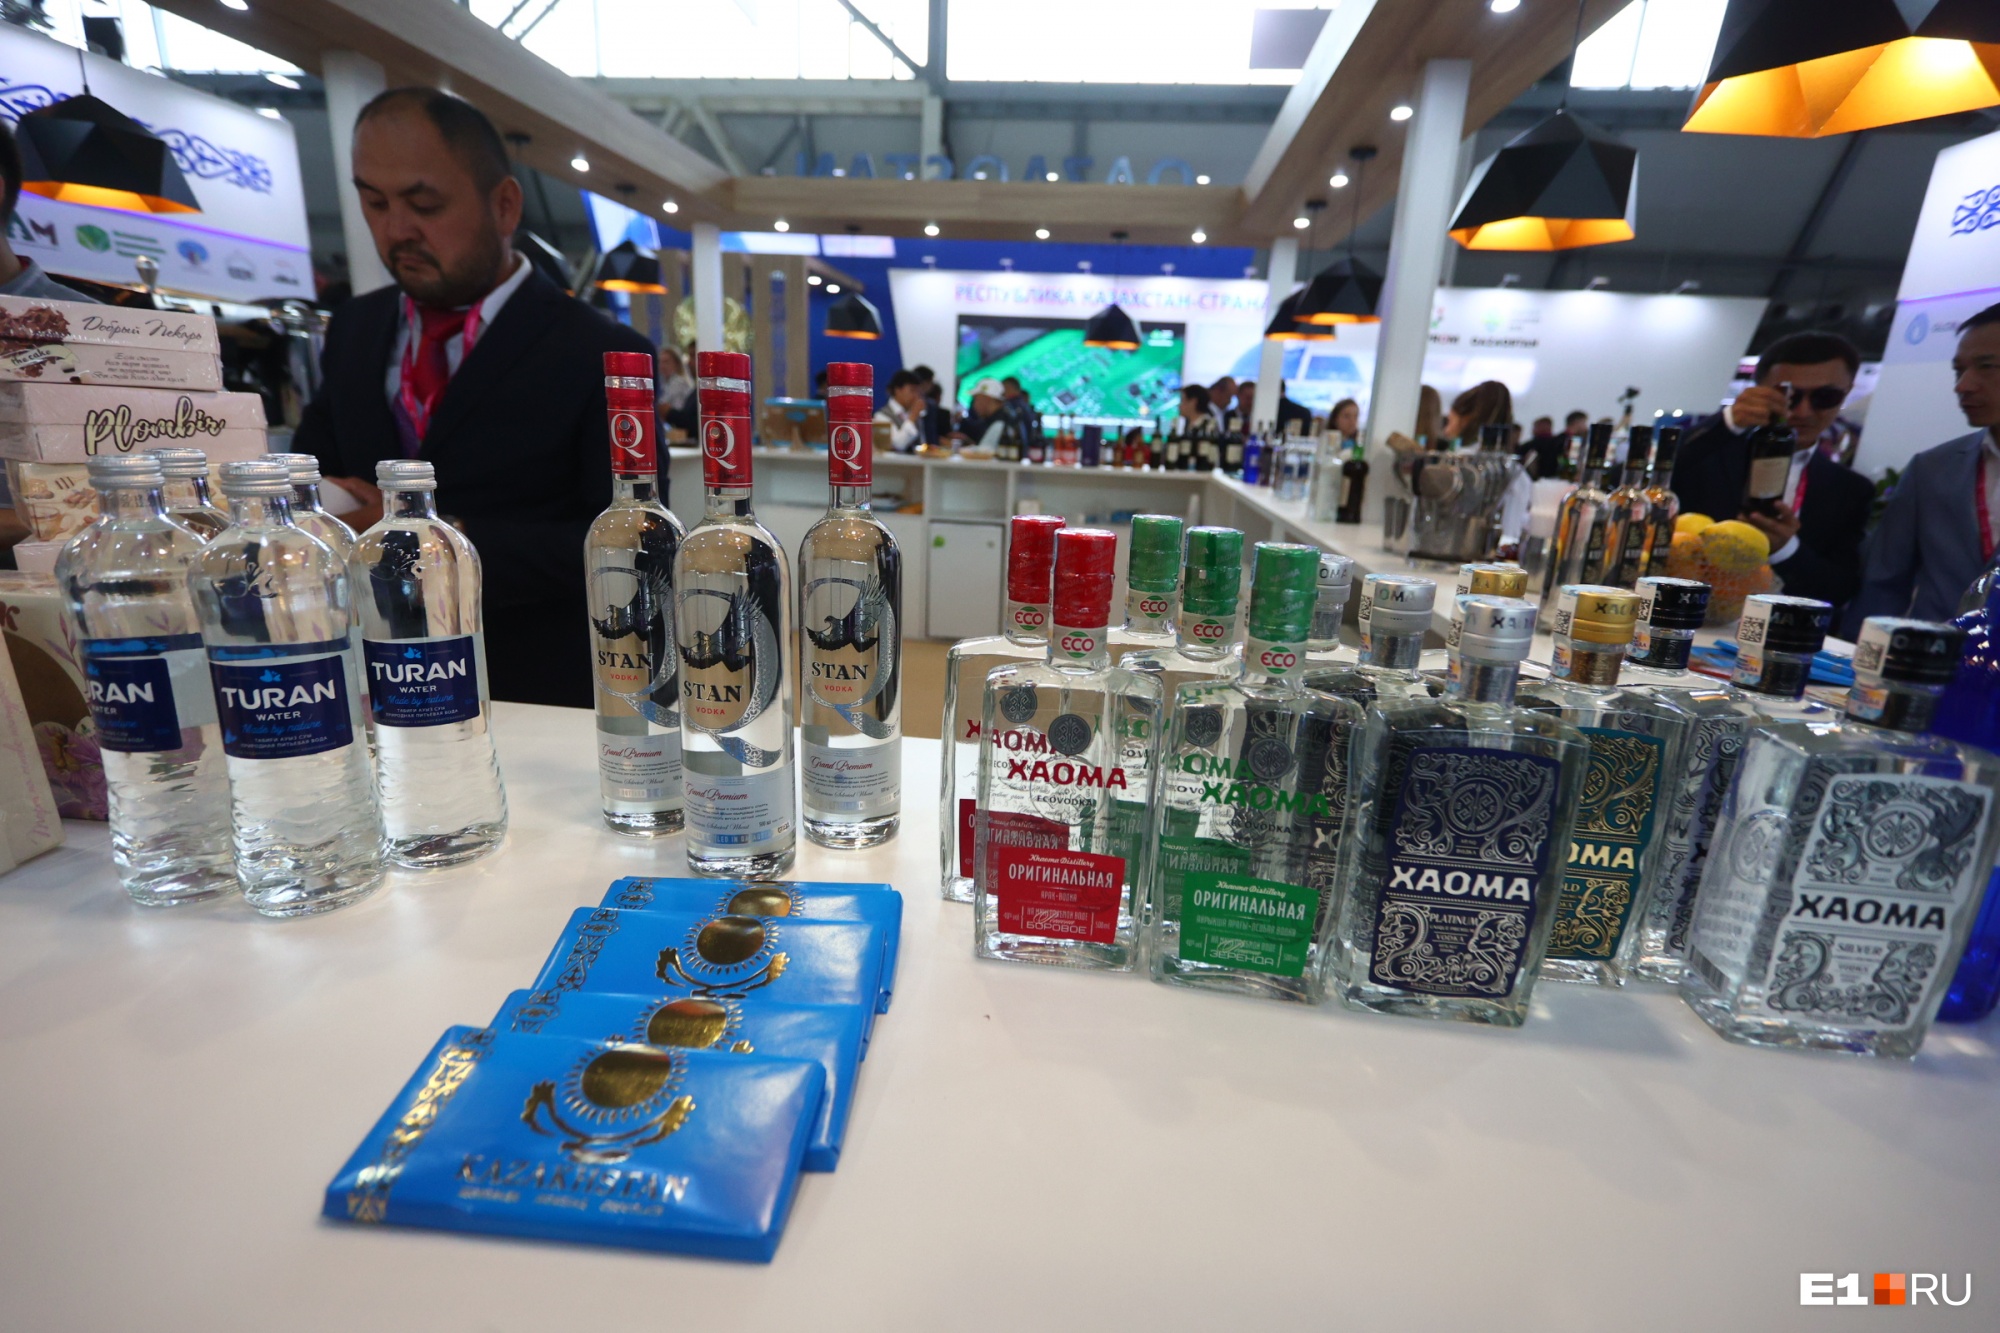 А еще здесь продают алкоголь из Казахстана. Например, бренд «Хаома», по данным Euromonitor International, занимает 33% всего алкогольного рынка Казахстана